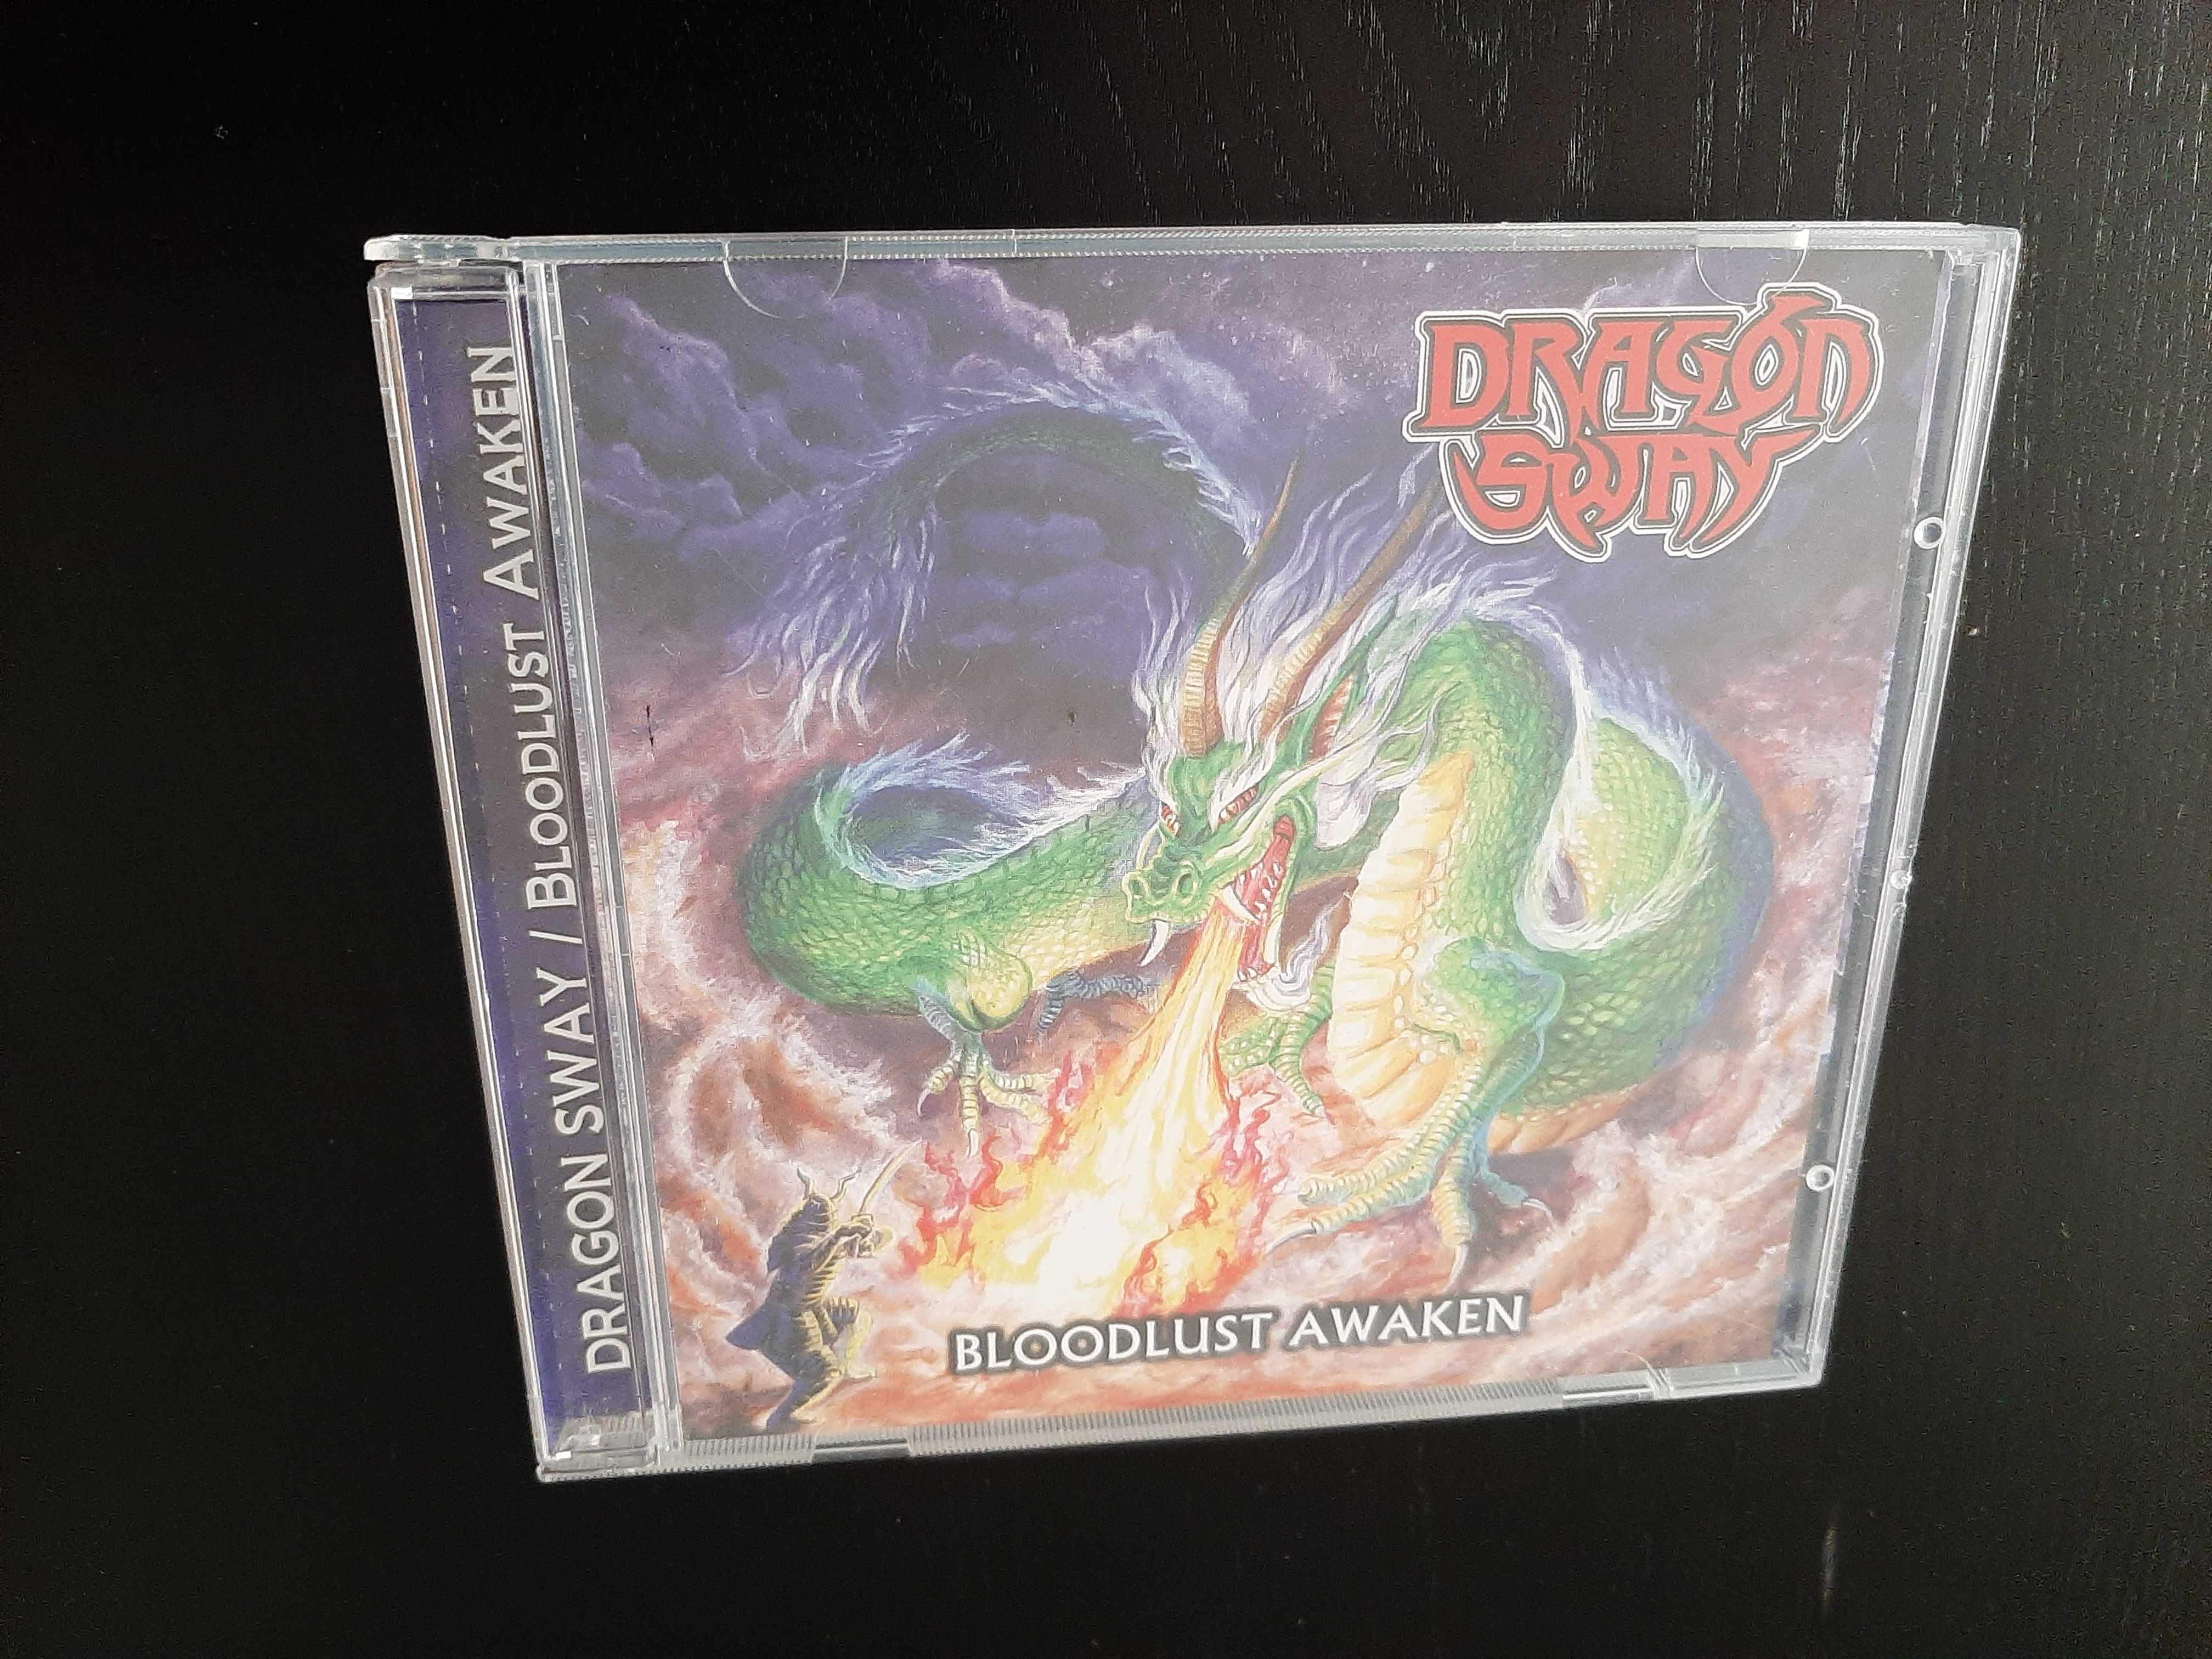 DRAGON SWAY "Bloodlust Awaken" CD wydanie japońskie 2022 heavy metal